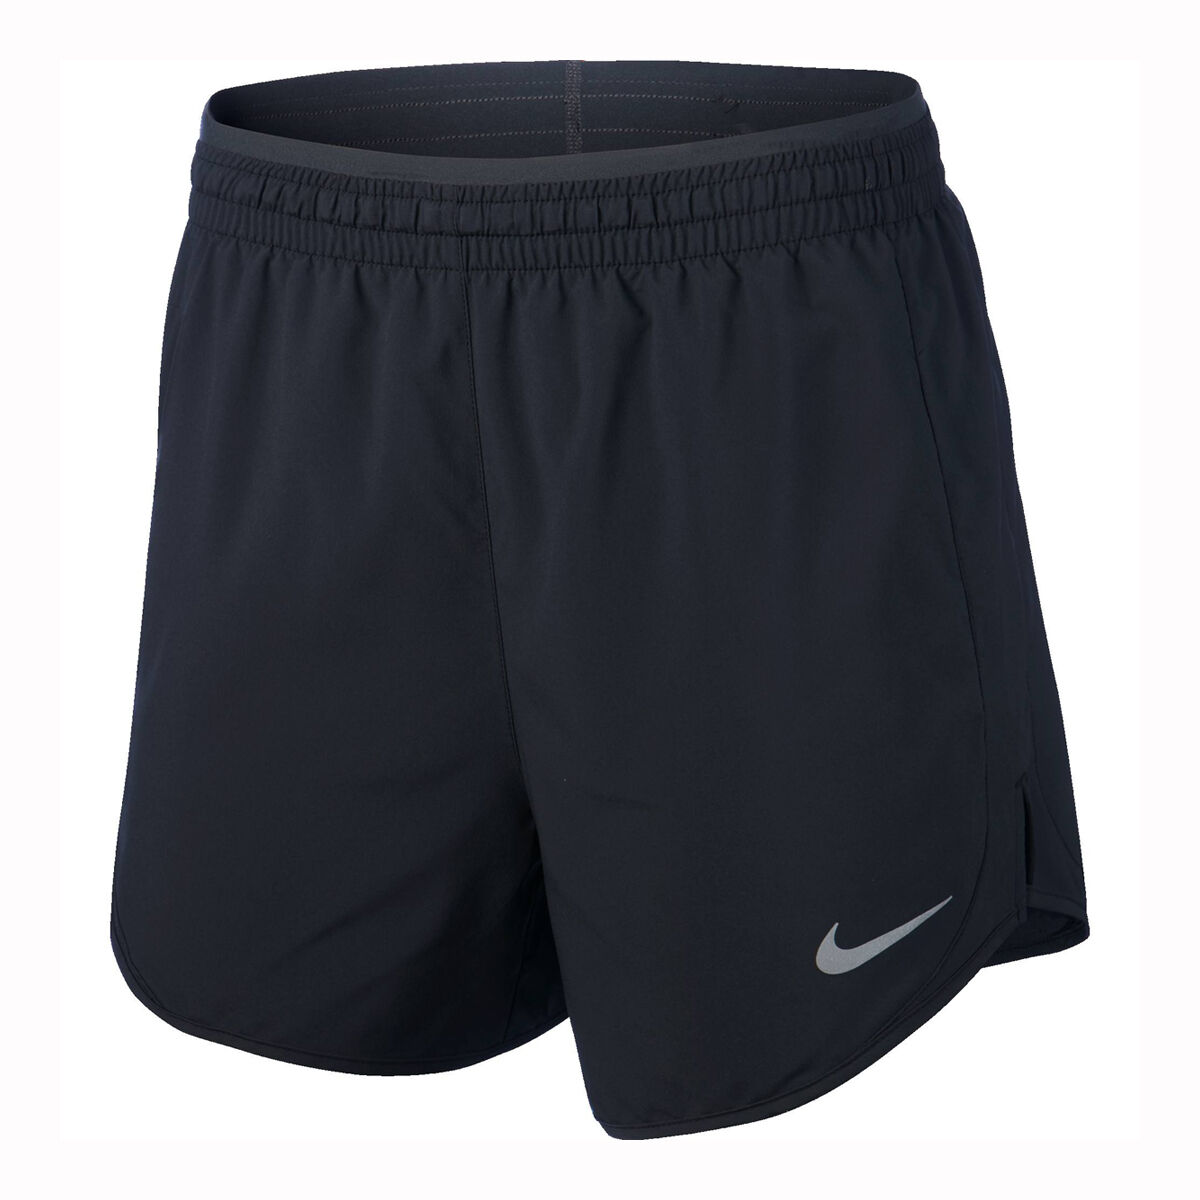 nike athletic shorts size chart